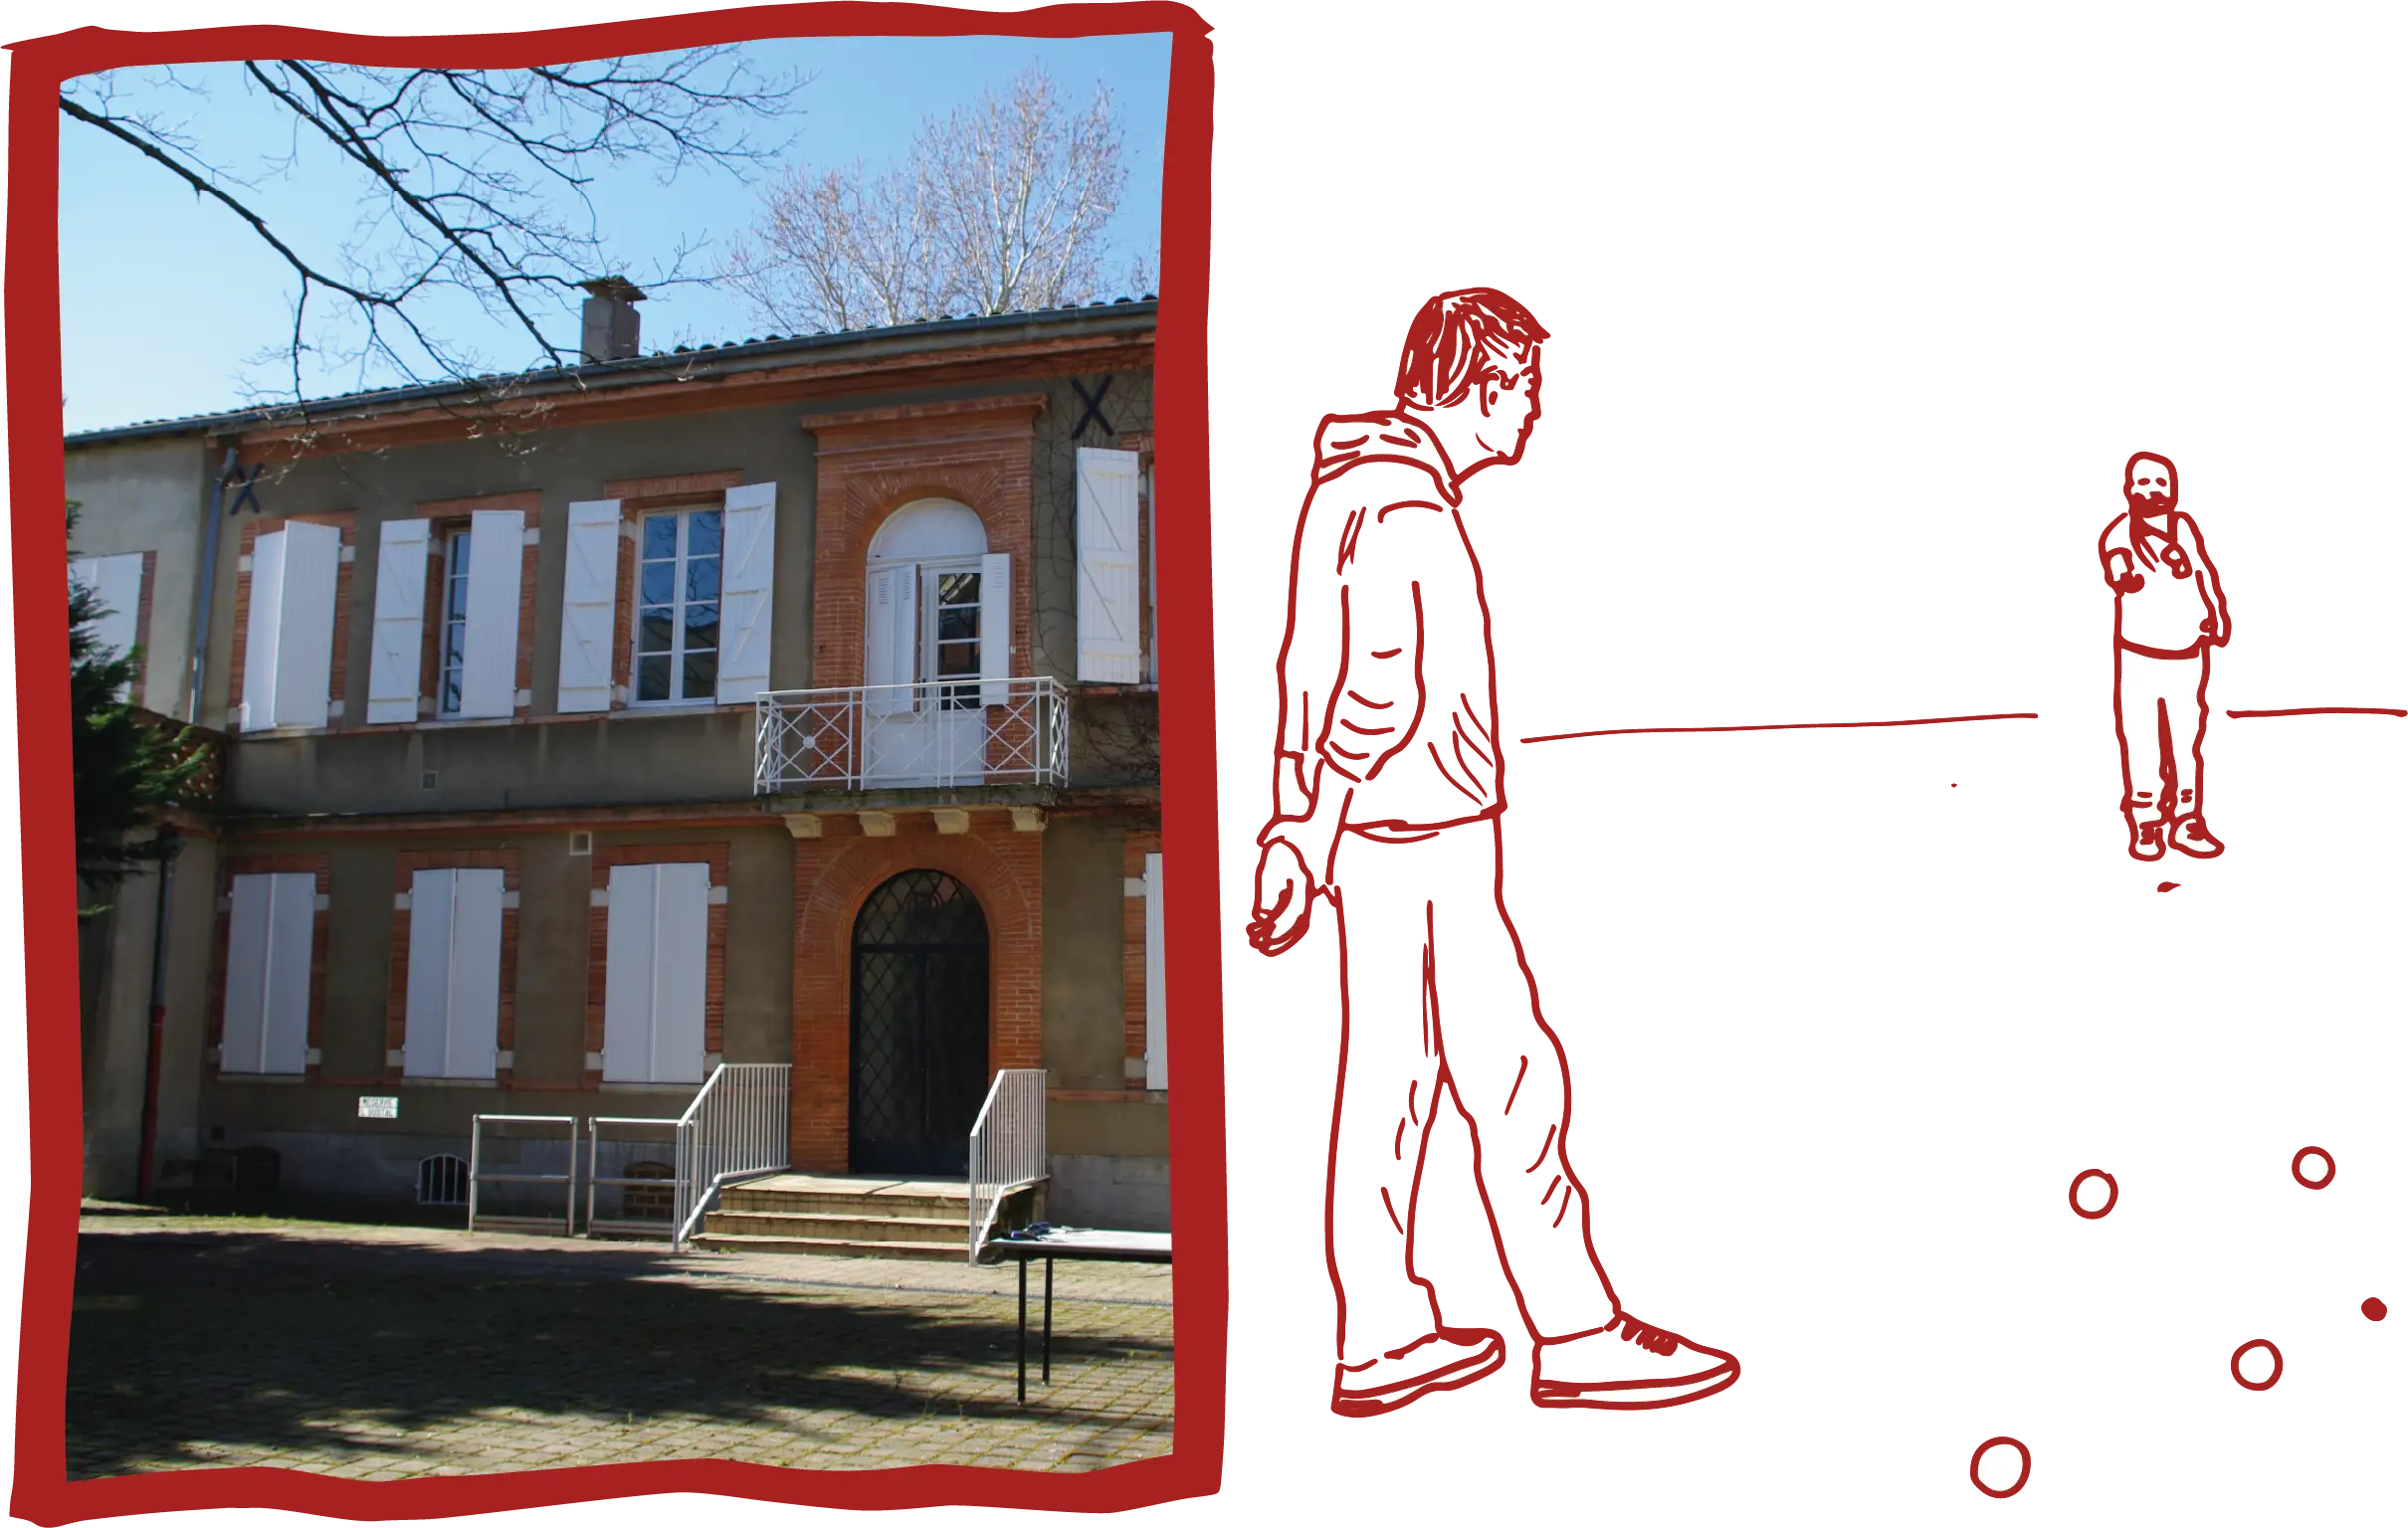 Sur la gauche du visuel, une photo d'une grande bâtisse en brique rouge avec des volets en bois blanc. Sur la droite un dessin au trait de deux hommes en train de jouer à la pétanque.